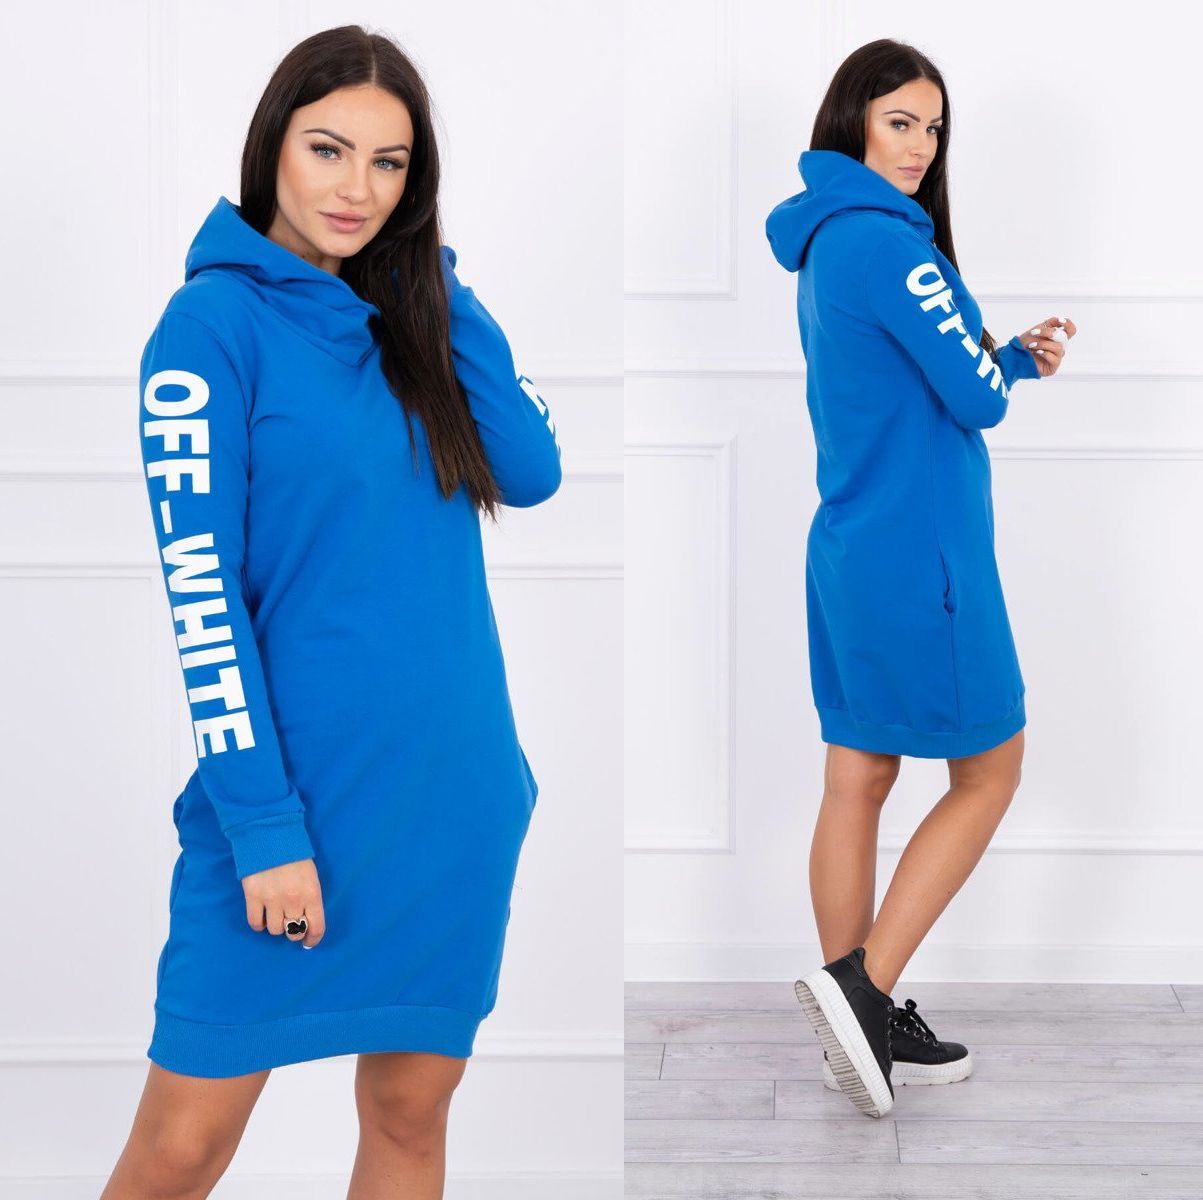 Sportovní šaty s kapucí Anna modré Velikost: Univerzální